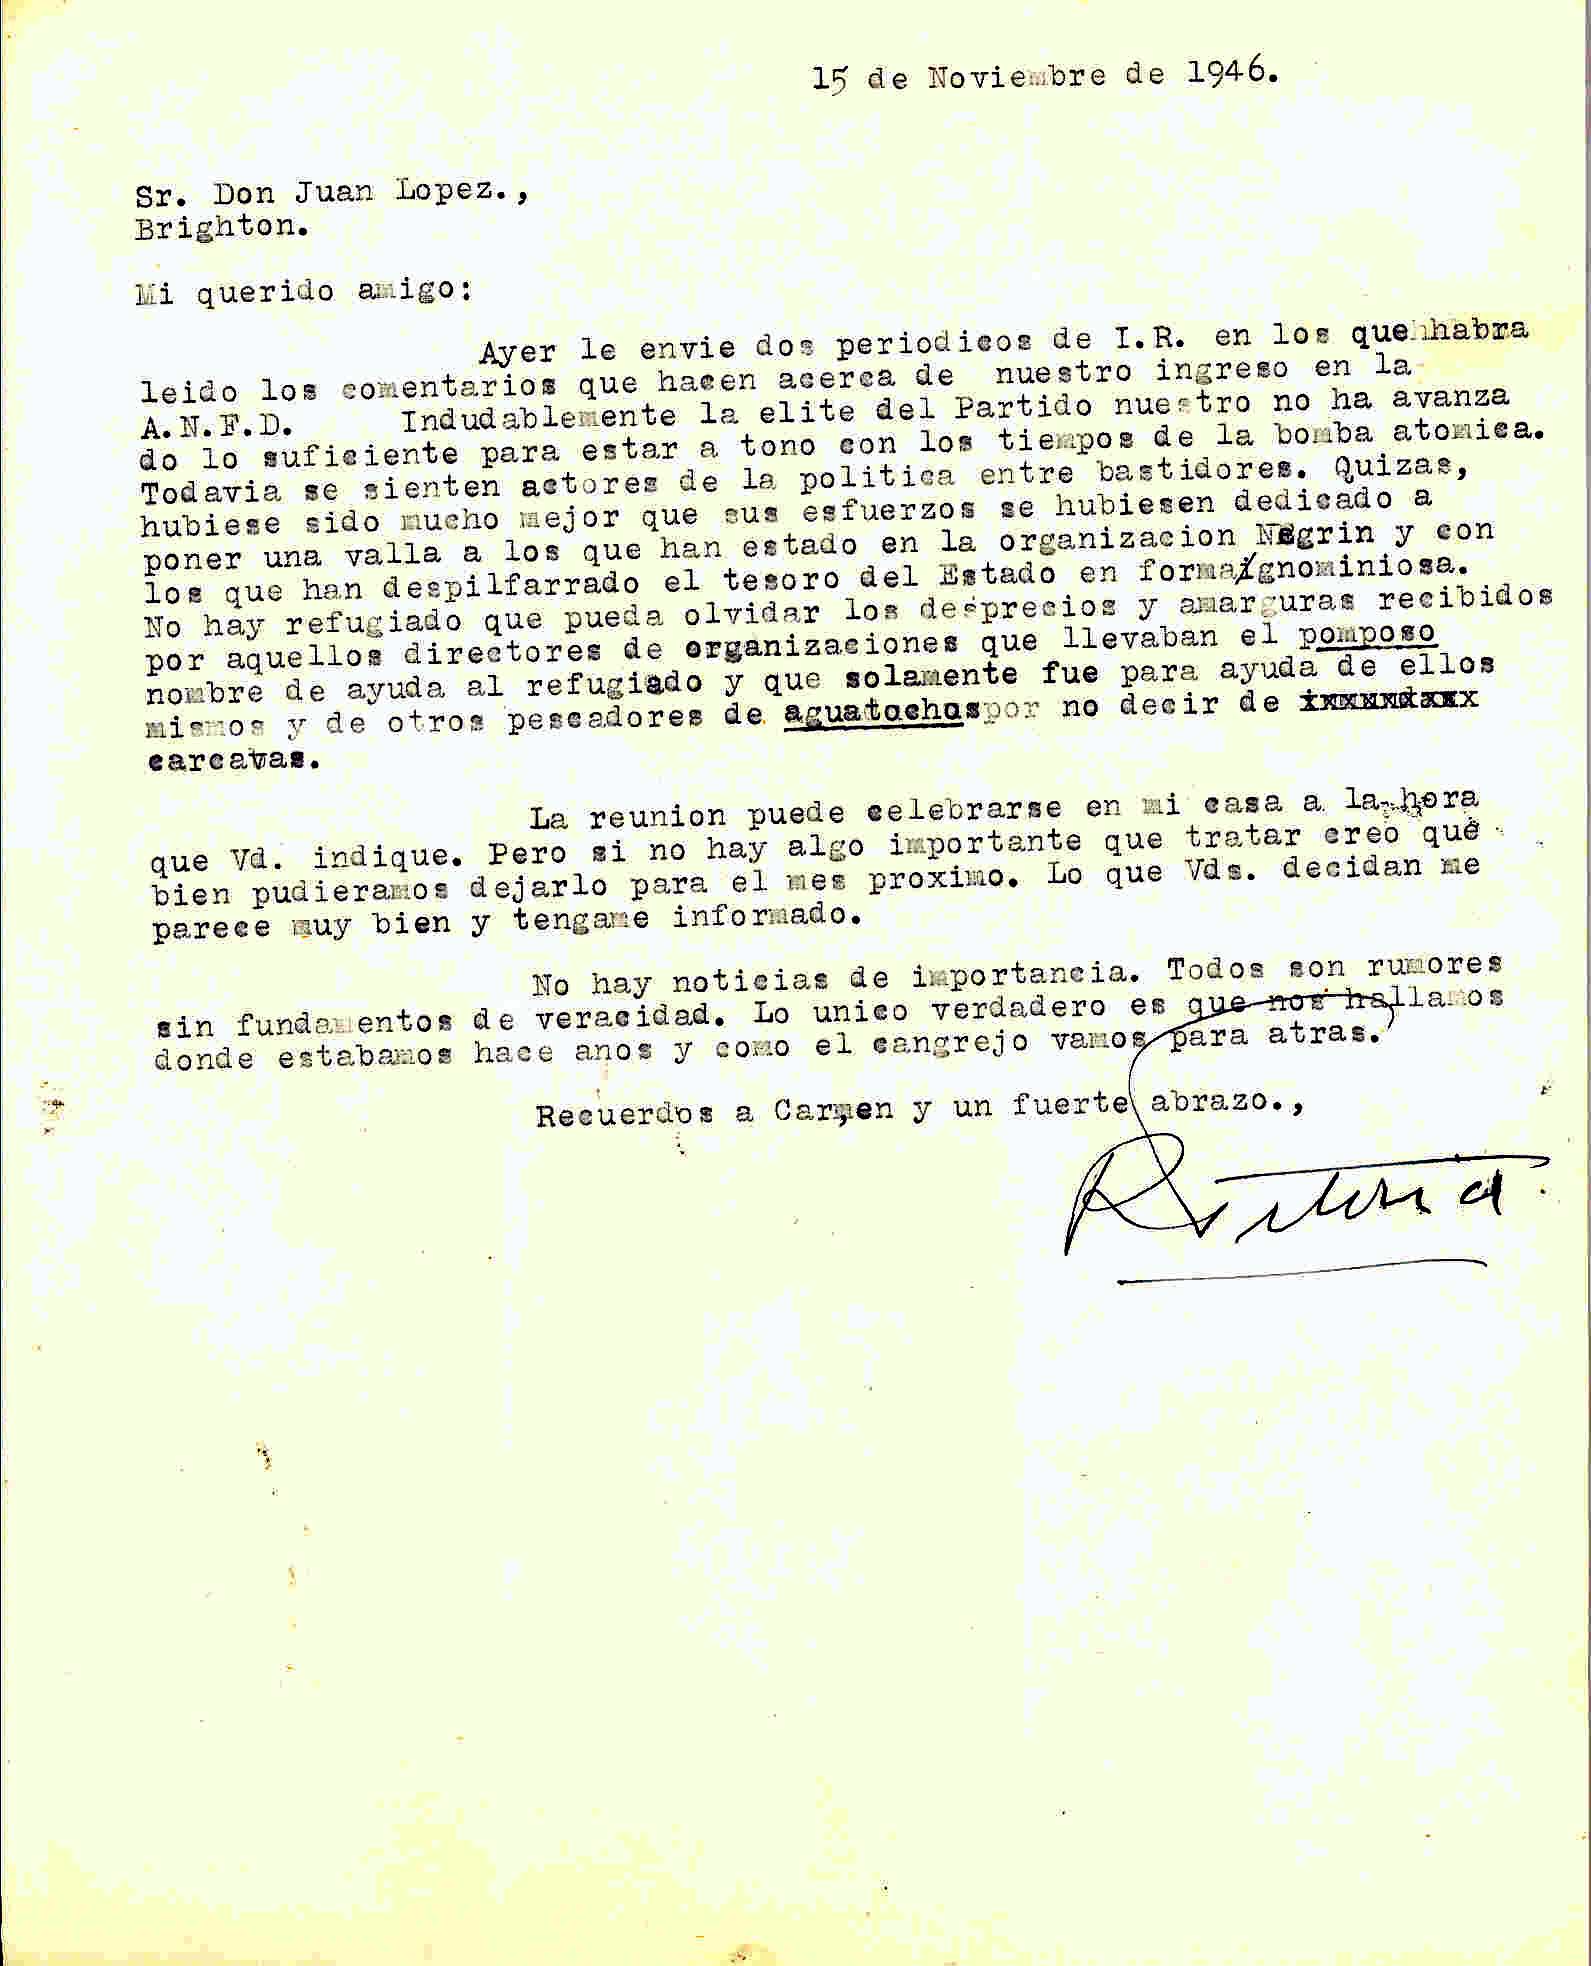 Carta de Roque Victoria en la que anuncia que le envió varias publicaciones de Izquierda Republicana y que al no haber temas de interés, la reunión de la ANFD podría posponerse para el mes siguiente.